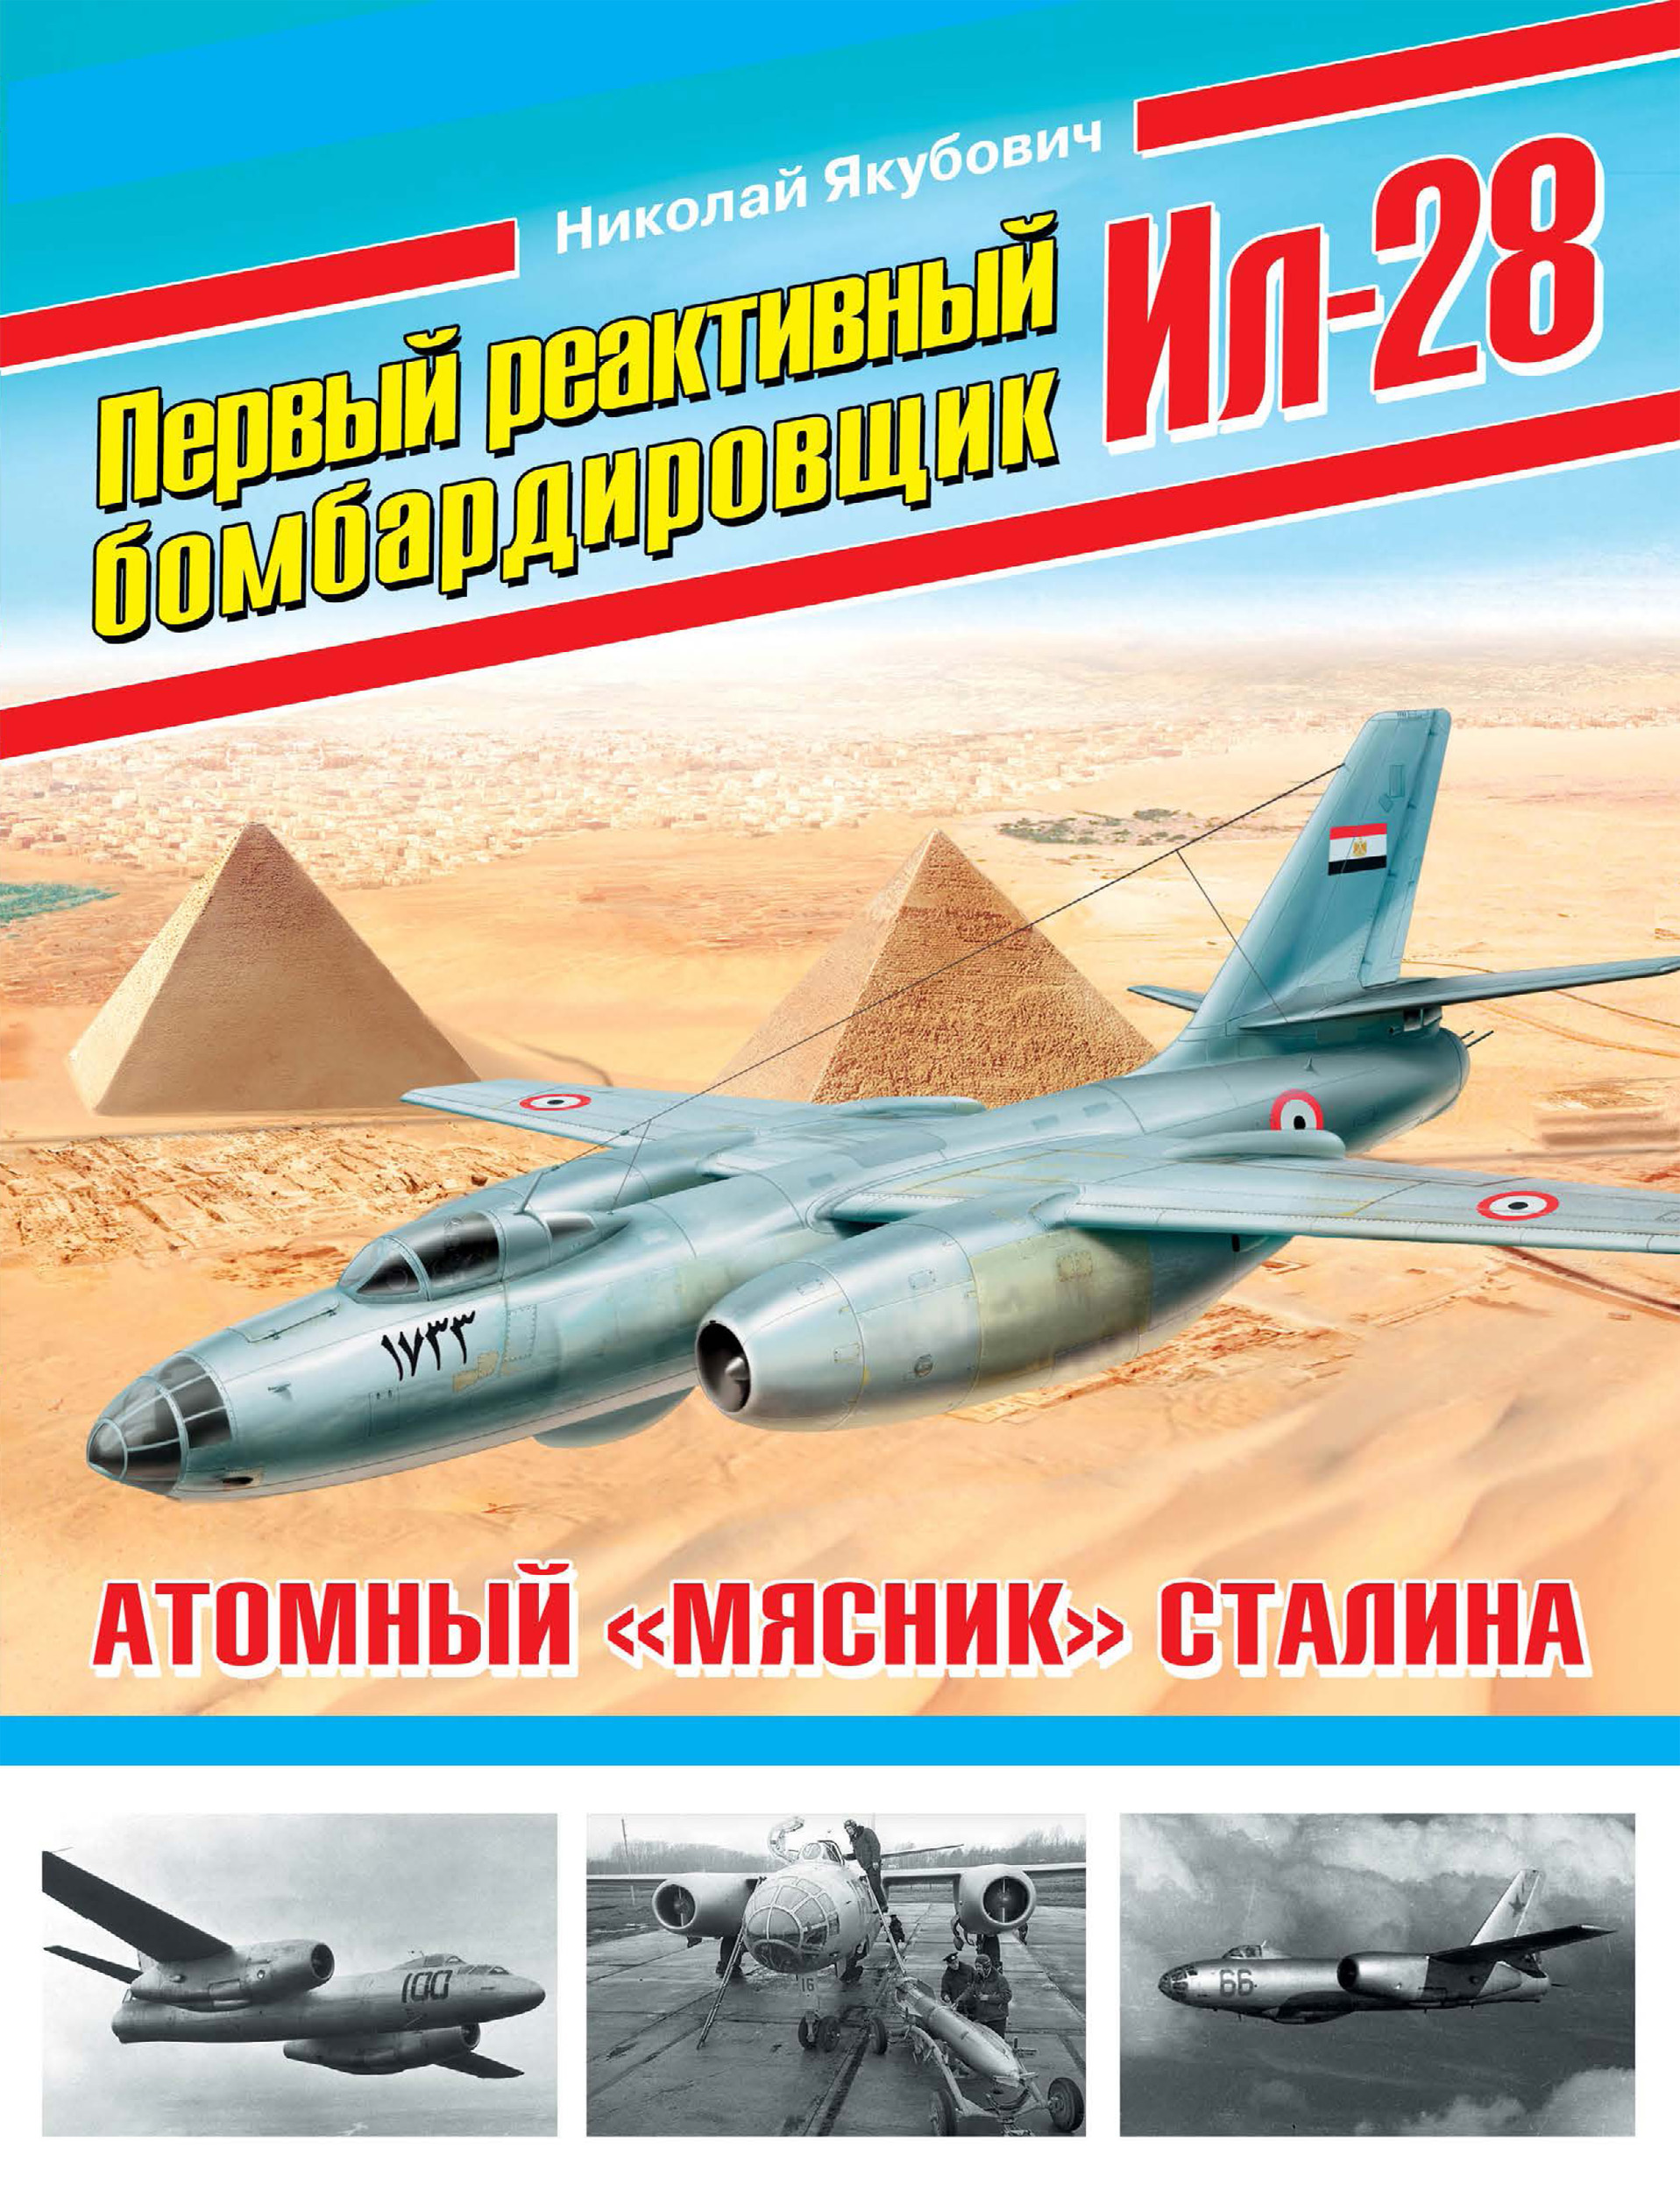 Первый реактивный бомбардировщик Ил-28. Атомный «мясник» Сталина